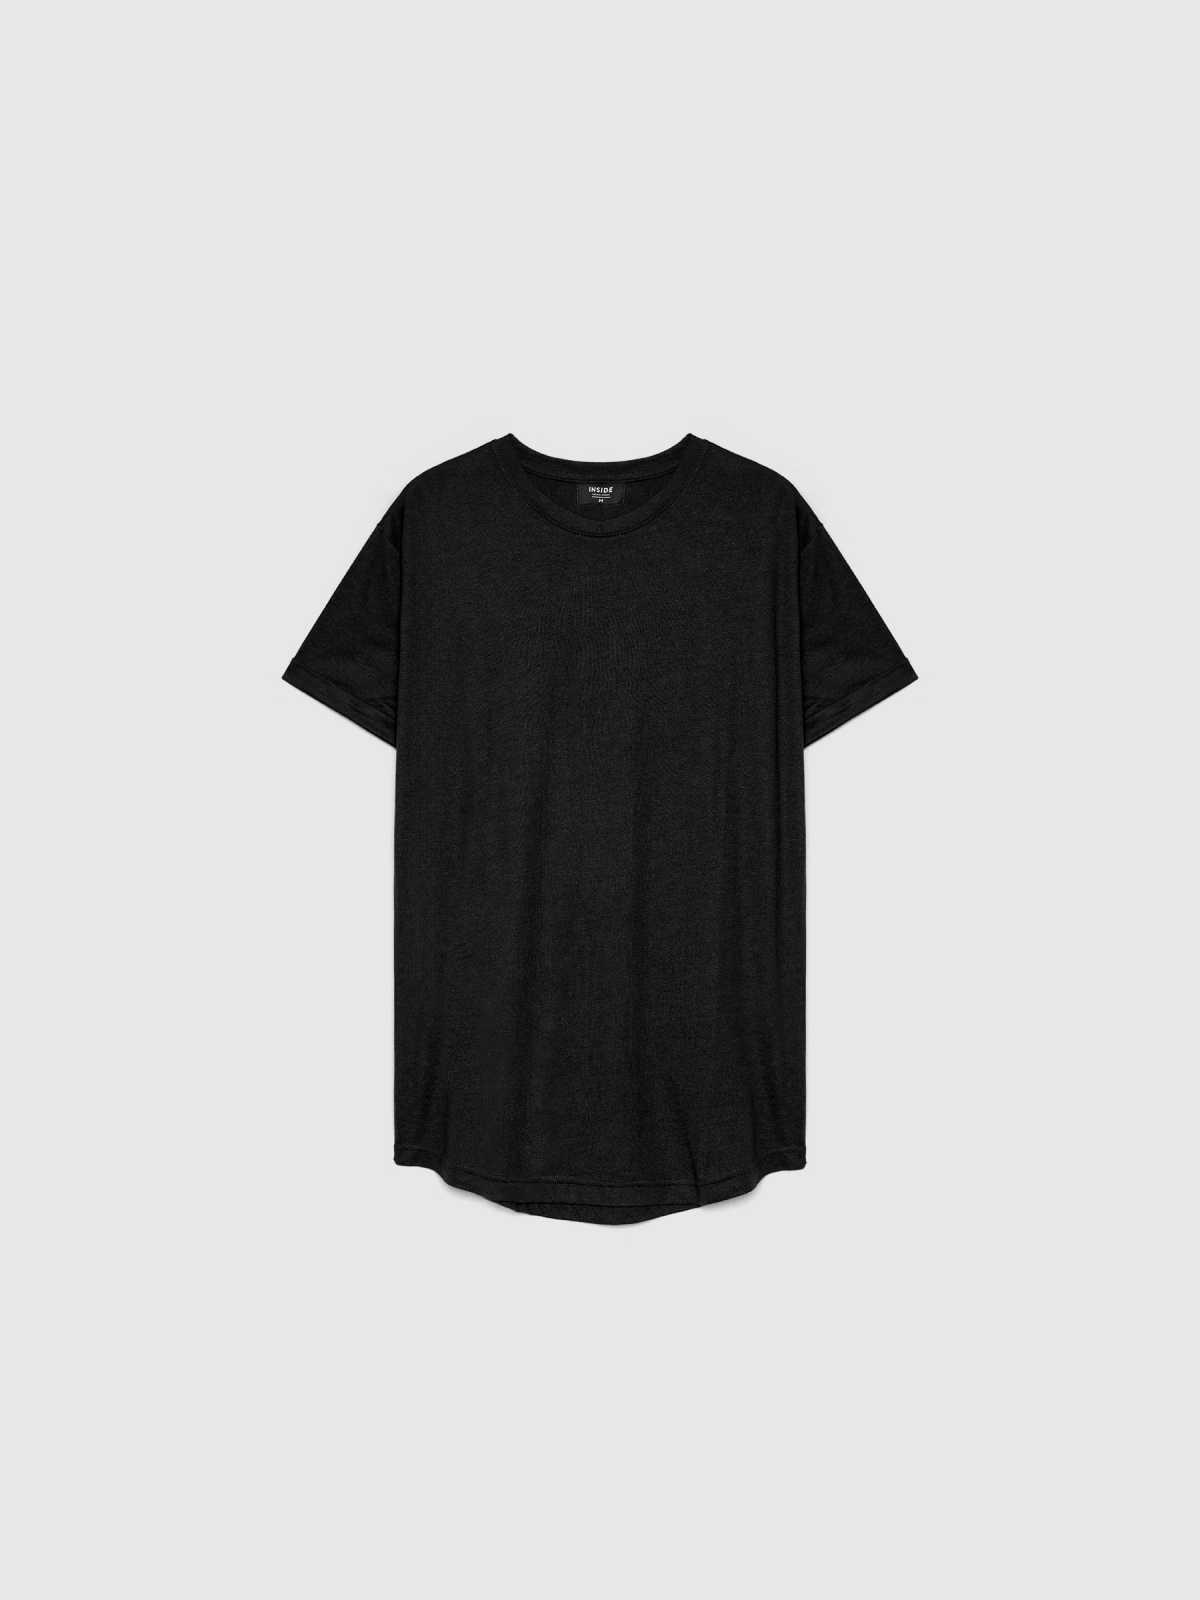  Long basic t-shirt black